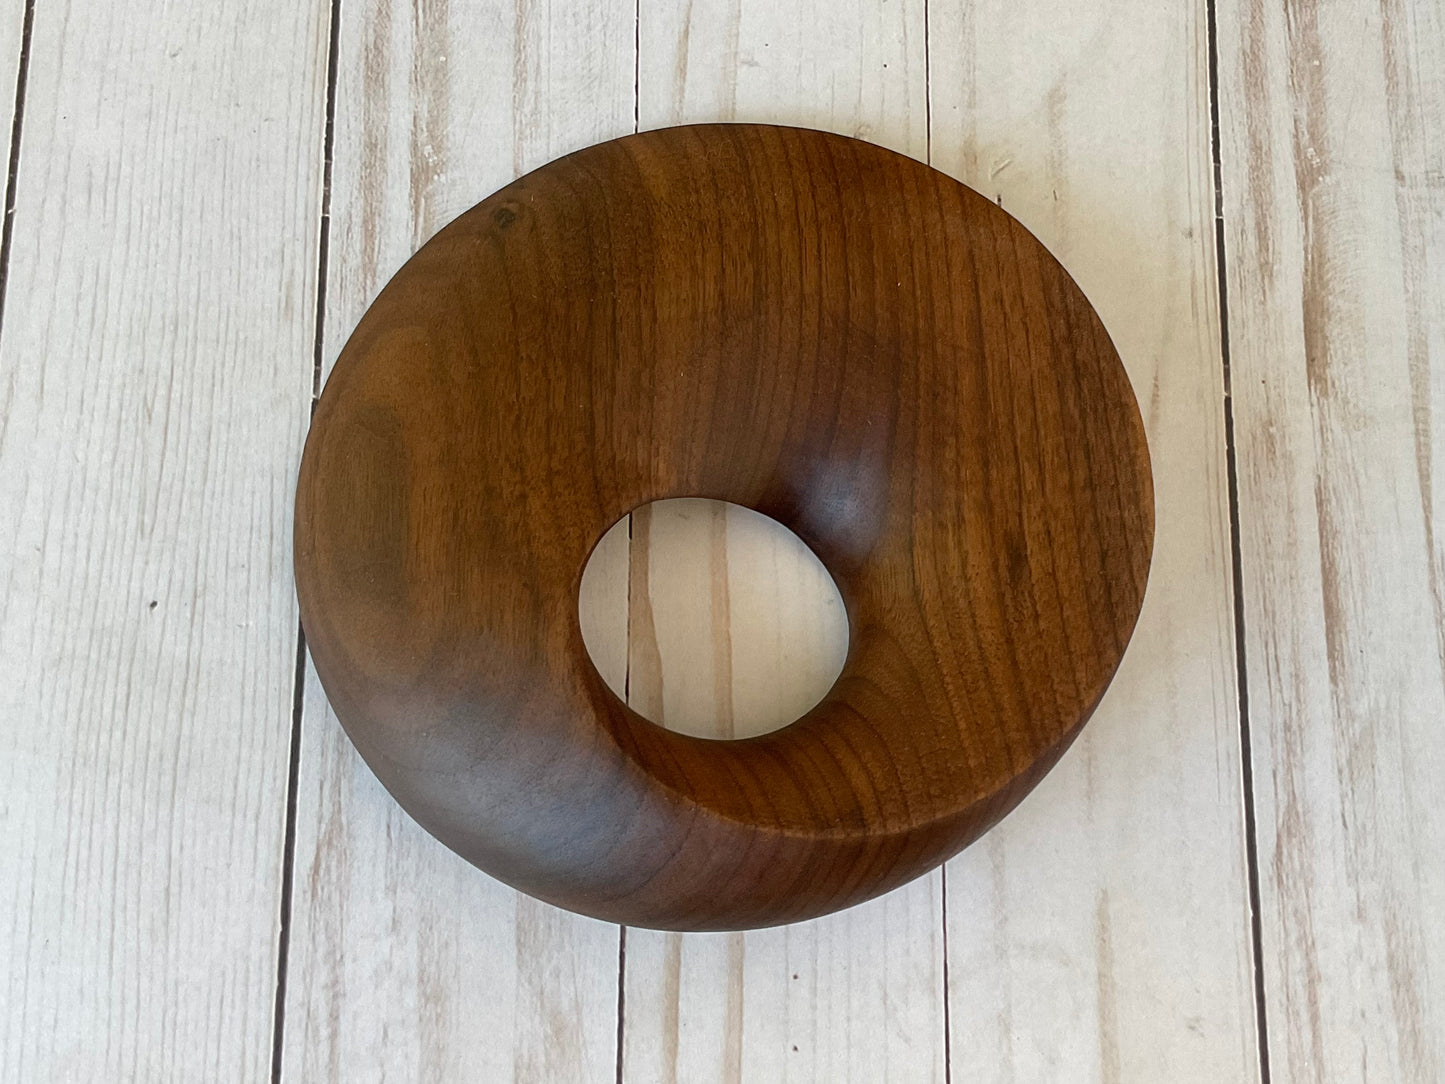 Möbius Strip Wooden Sculpture, Walnut Wood, 7"